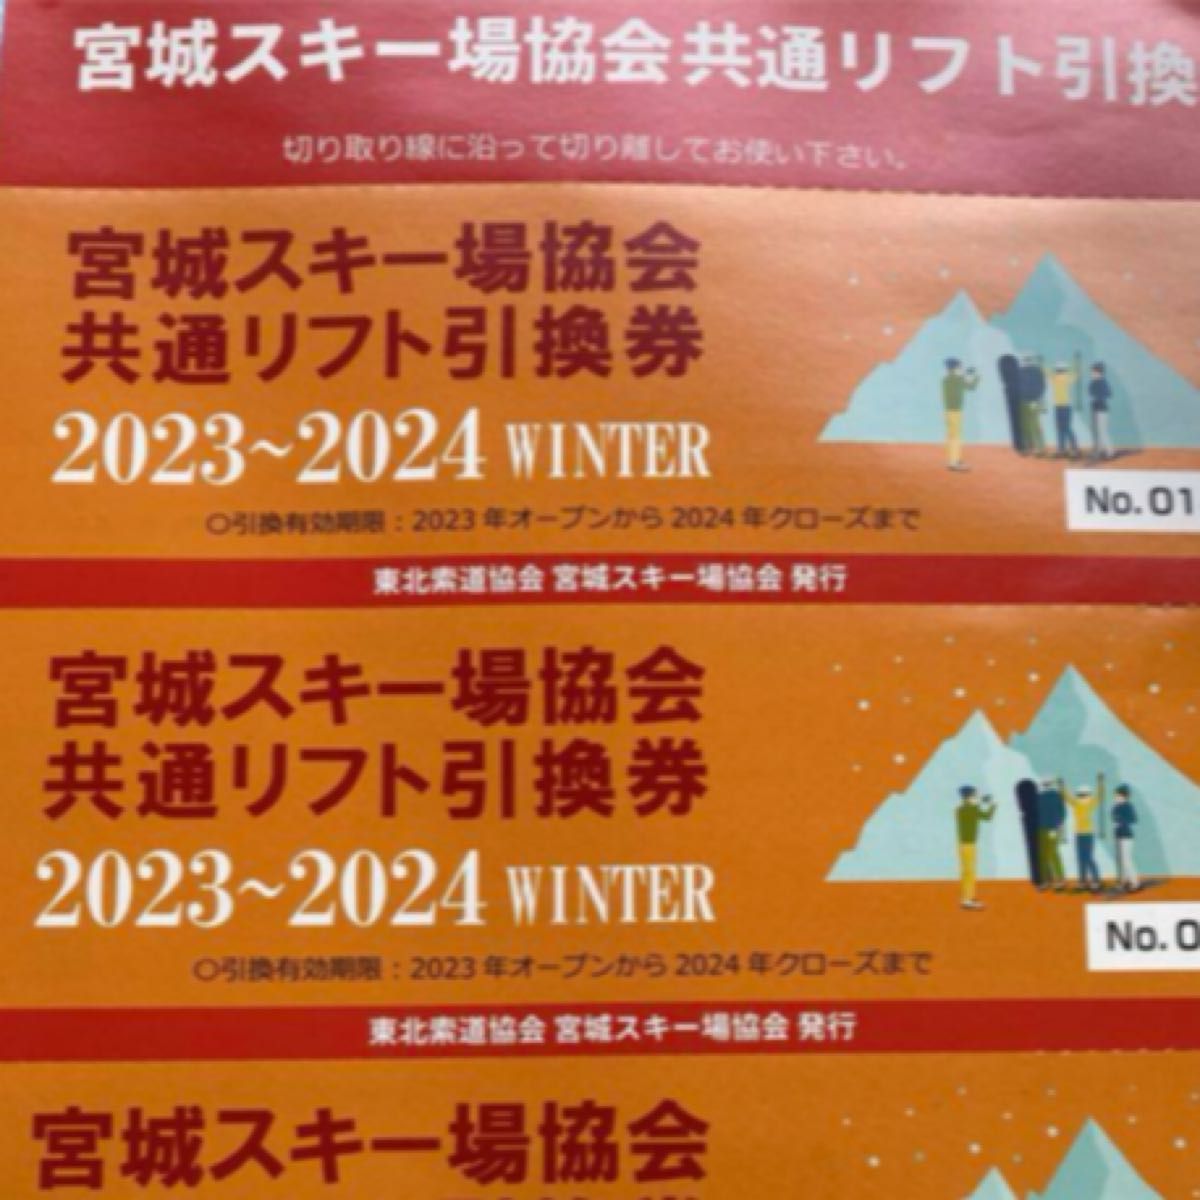 宮城県共通リフト券 2023-2024 4枚 2021新作モデル - スキー場